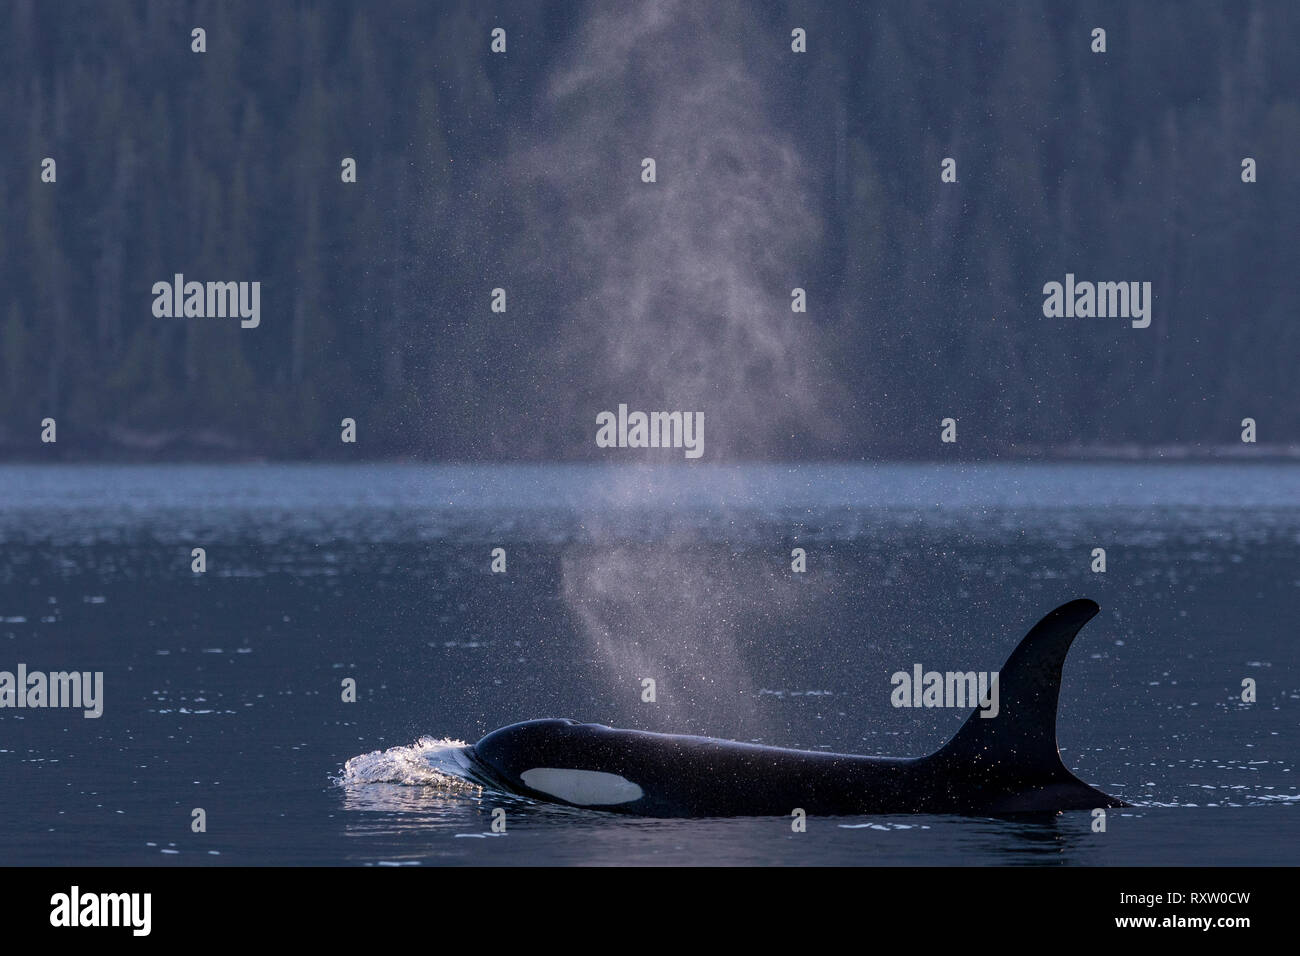 Killer whale residente del norte de viajar a lo largo de la costa de la isla de Vancouver en Johnstone Strait, Territorio de las Primeras Naciones, British Columbia, Canadá Foto de stock